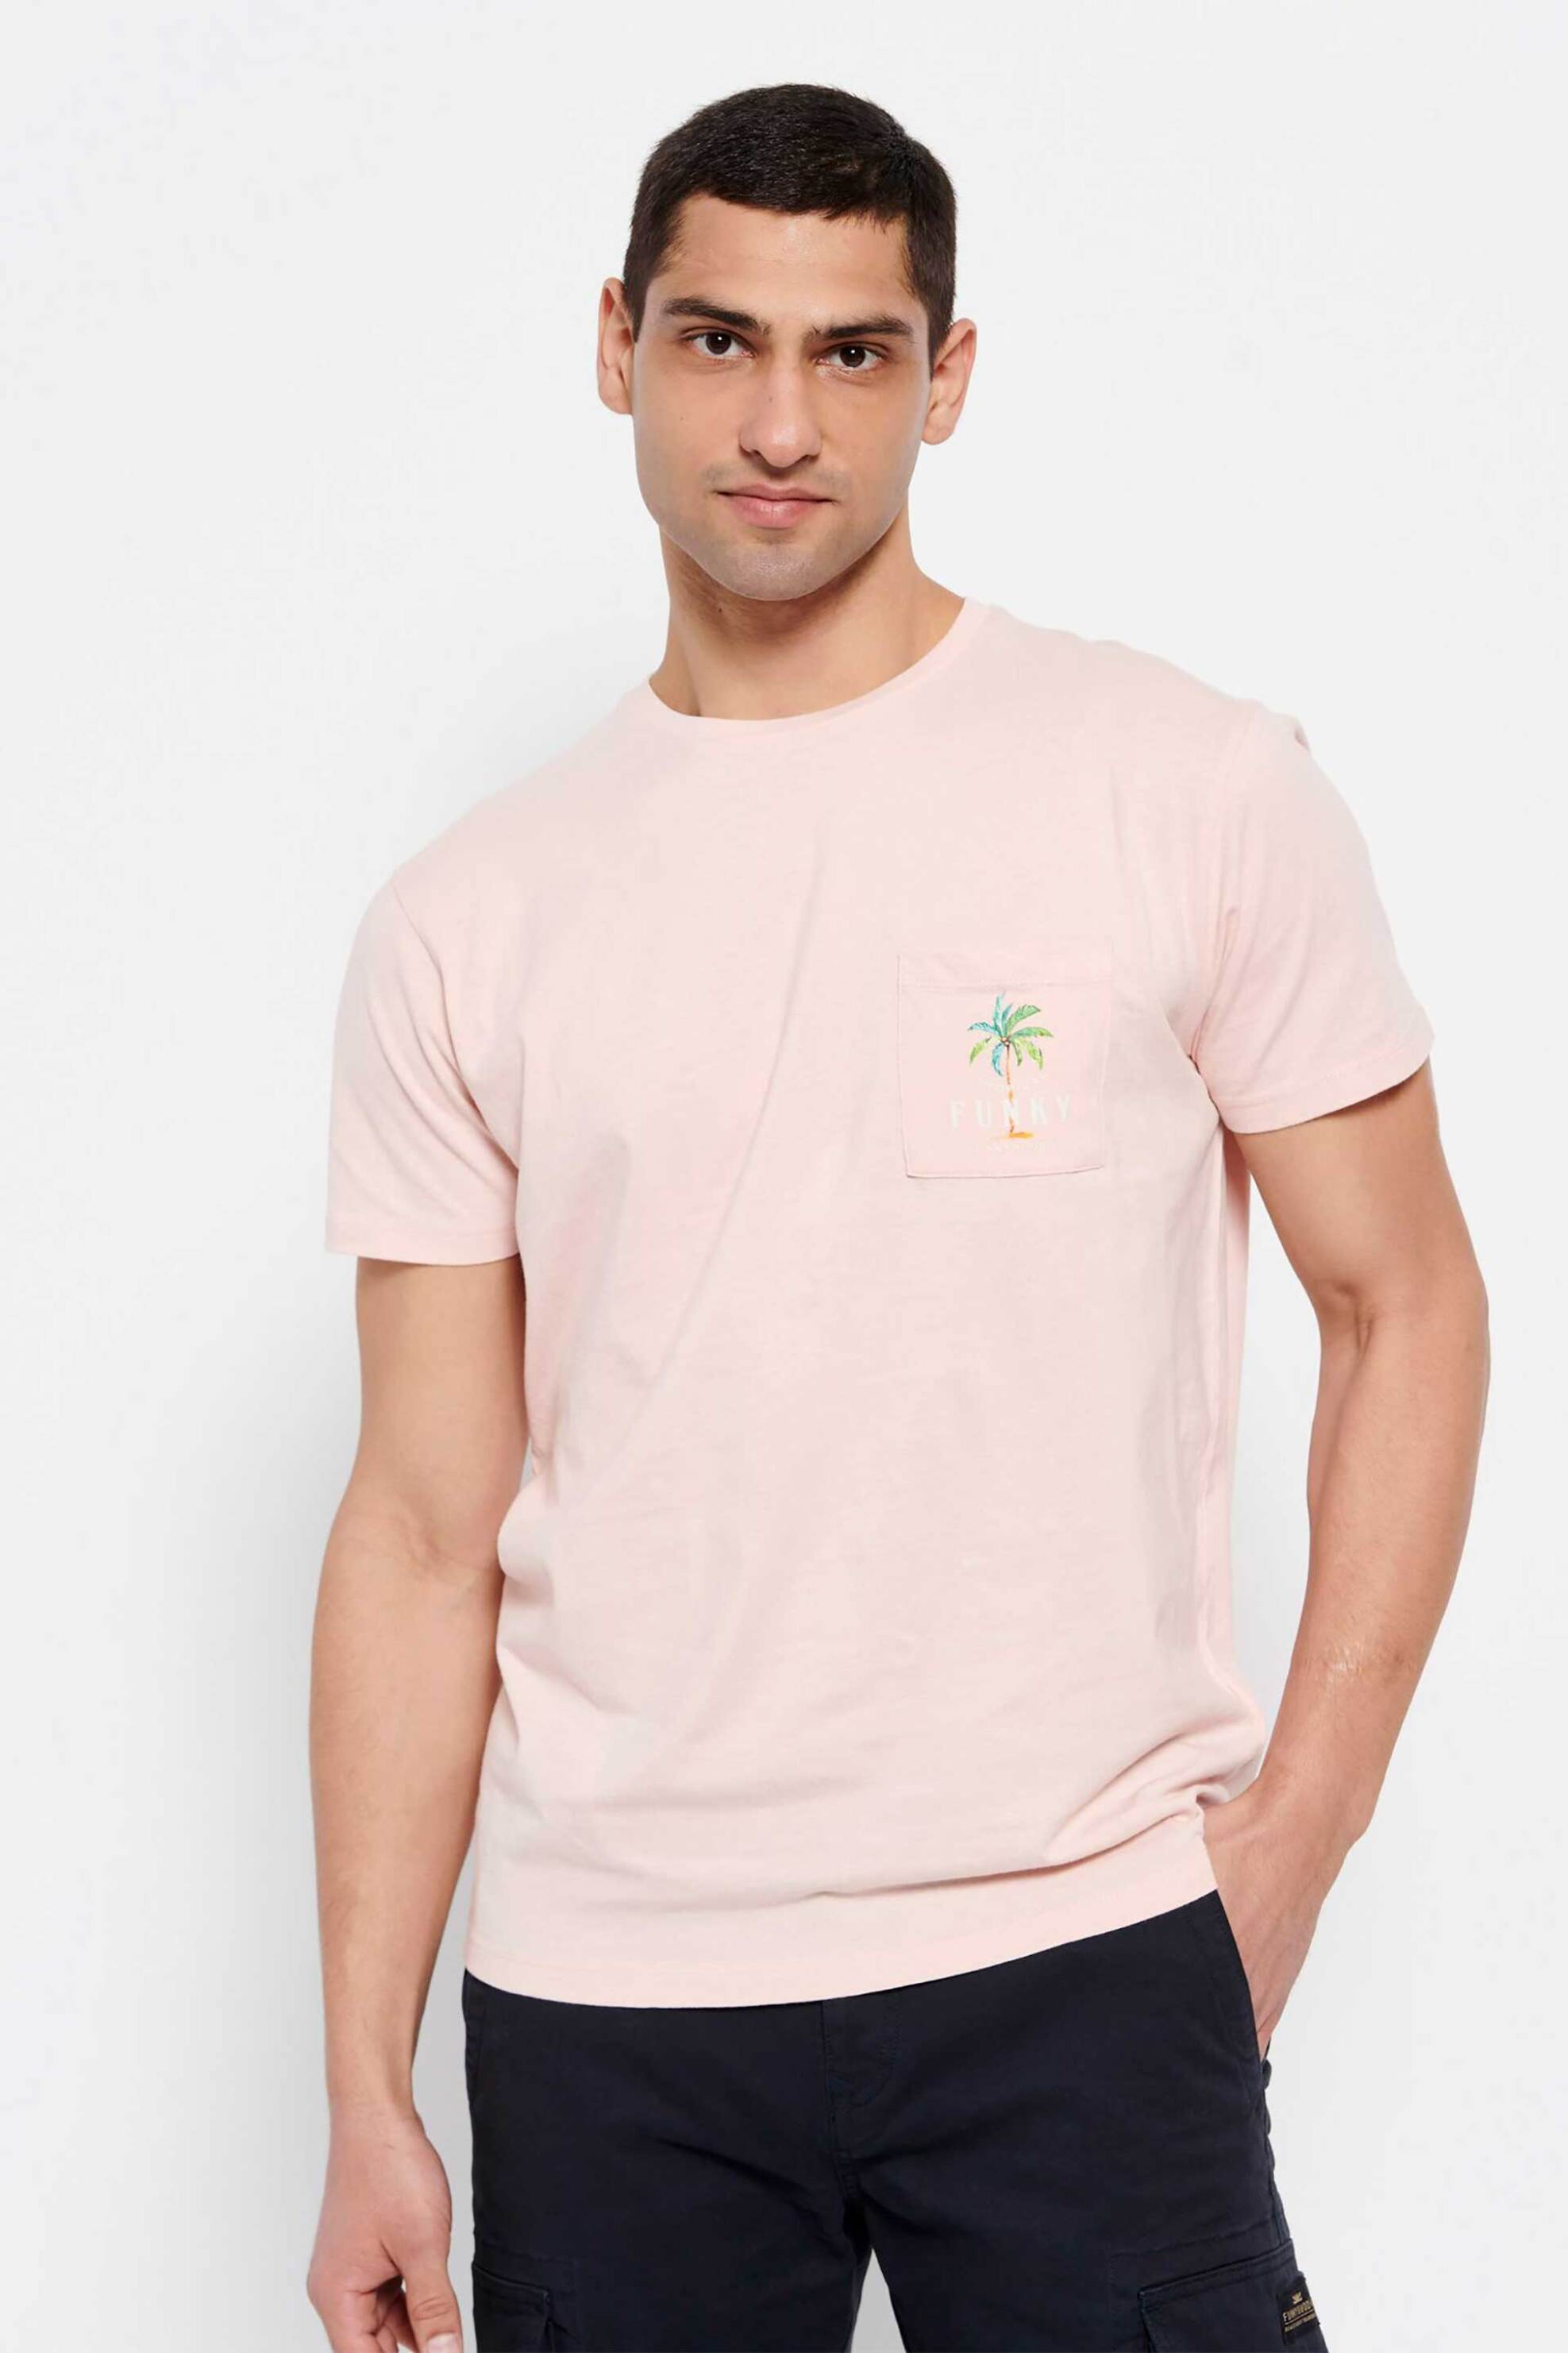 Ανδρική Μόδα > Ανδρικά Ρούχα > Ανδρικές Μπλούζες > Ανδρικά T-Shirts Funky Buddha ανδρικό βαμβακερό T-shirt μονόχρωμο με τσέπη και palm tree print στο στήθος - FBM007-385-04 Ροζ Ανοιχτό